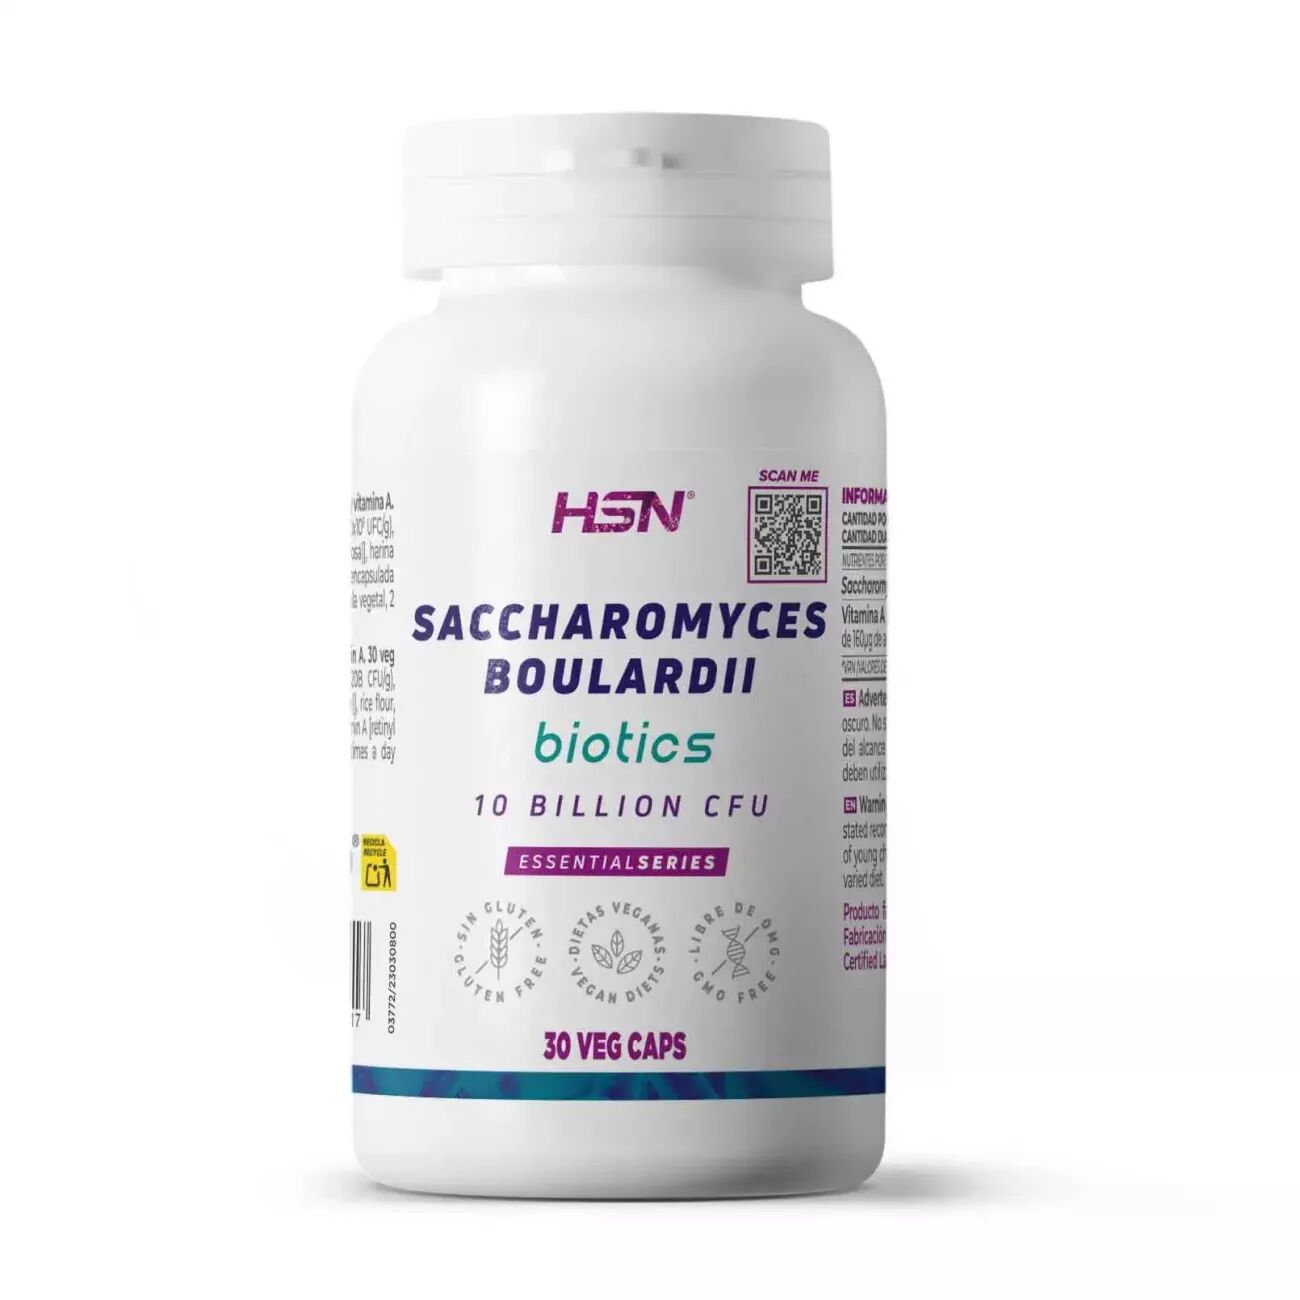 HSN Saccharomyces boulardii 10b ufc - 30 veg caps